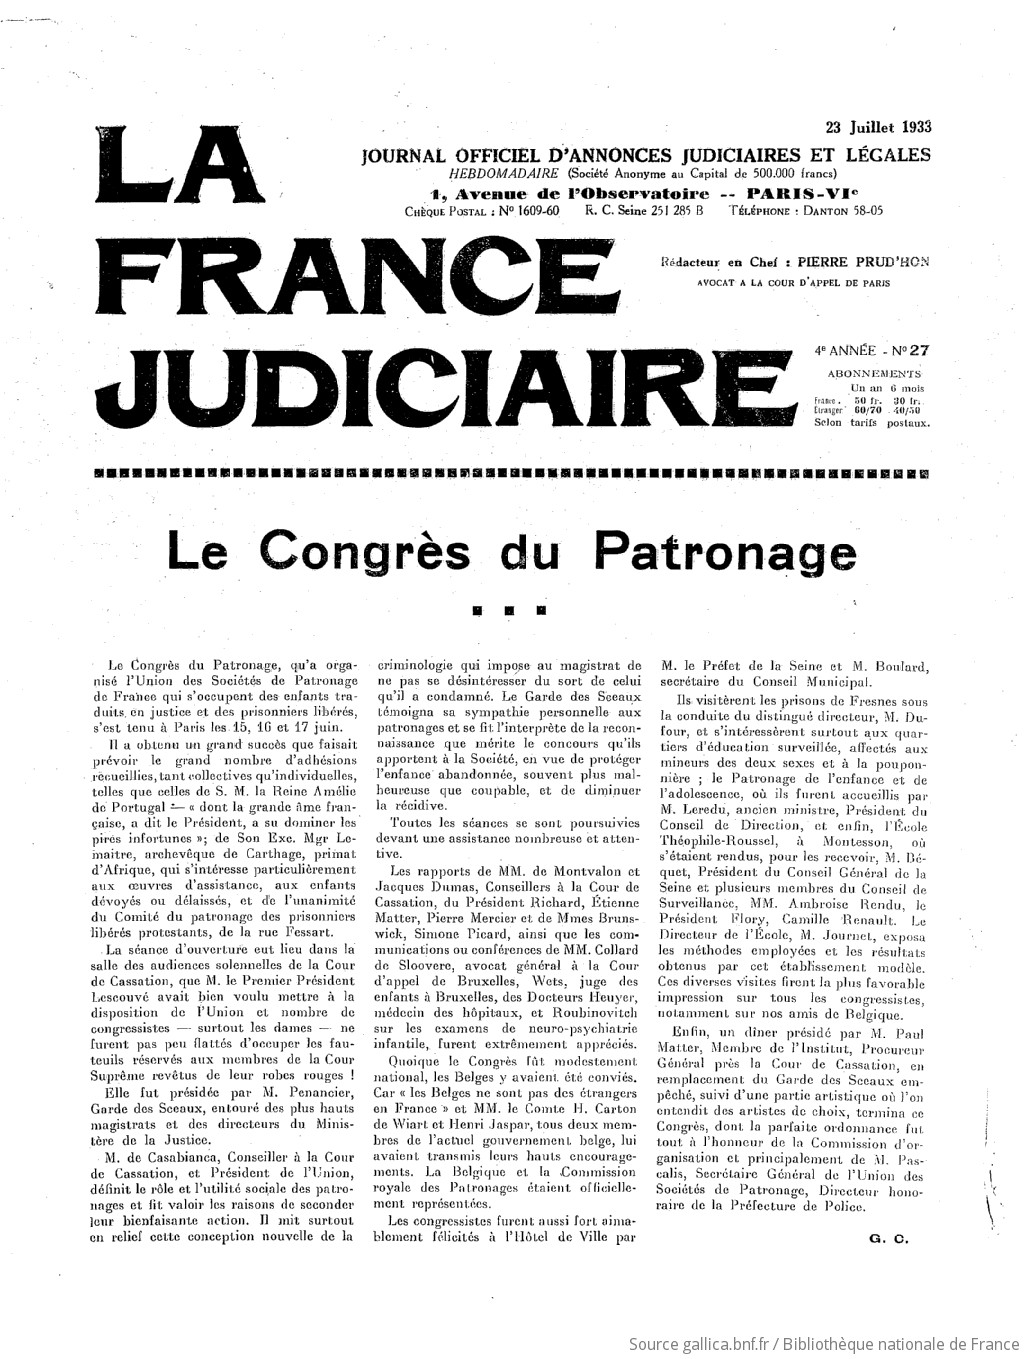 La France judiciaire : journal hebdomadaire universel / rédacteur en chef Pierre Prud'hon,...